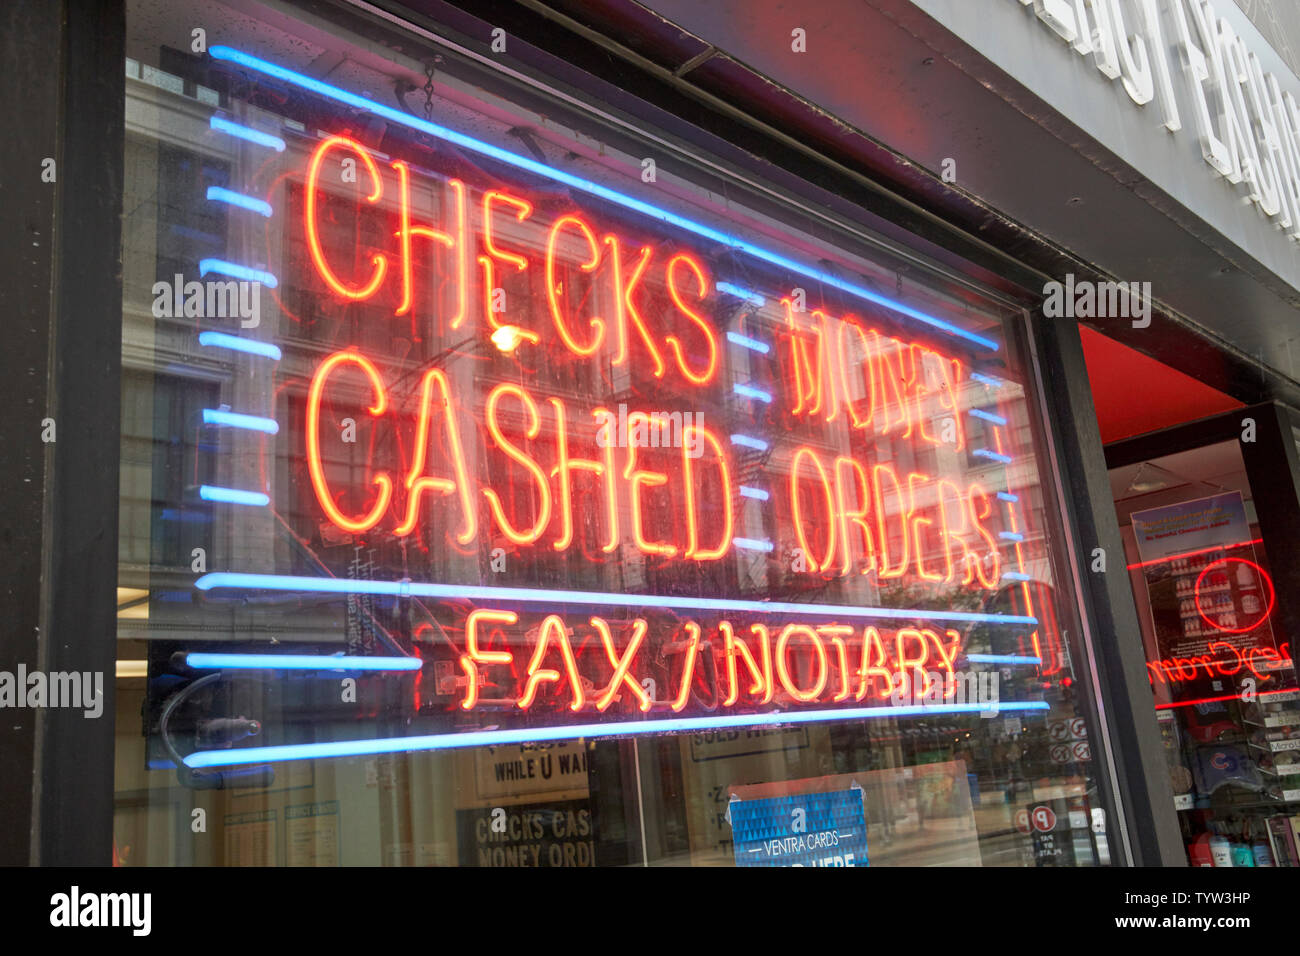 Insegna al neon in una vetrina di un negozio per assegni riscossi o ordini di denaro e fax notaio Chicago IL USA Foto Stock